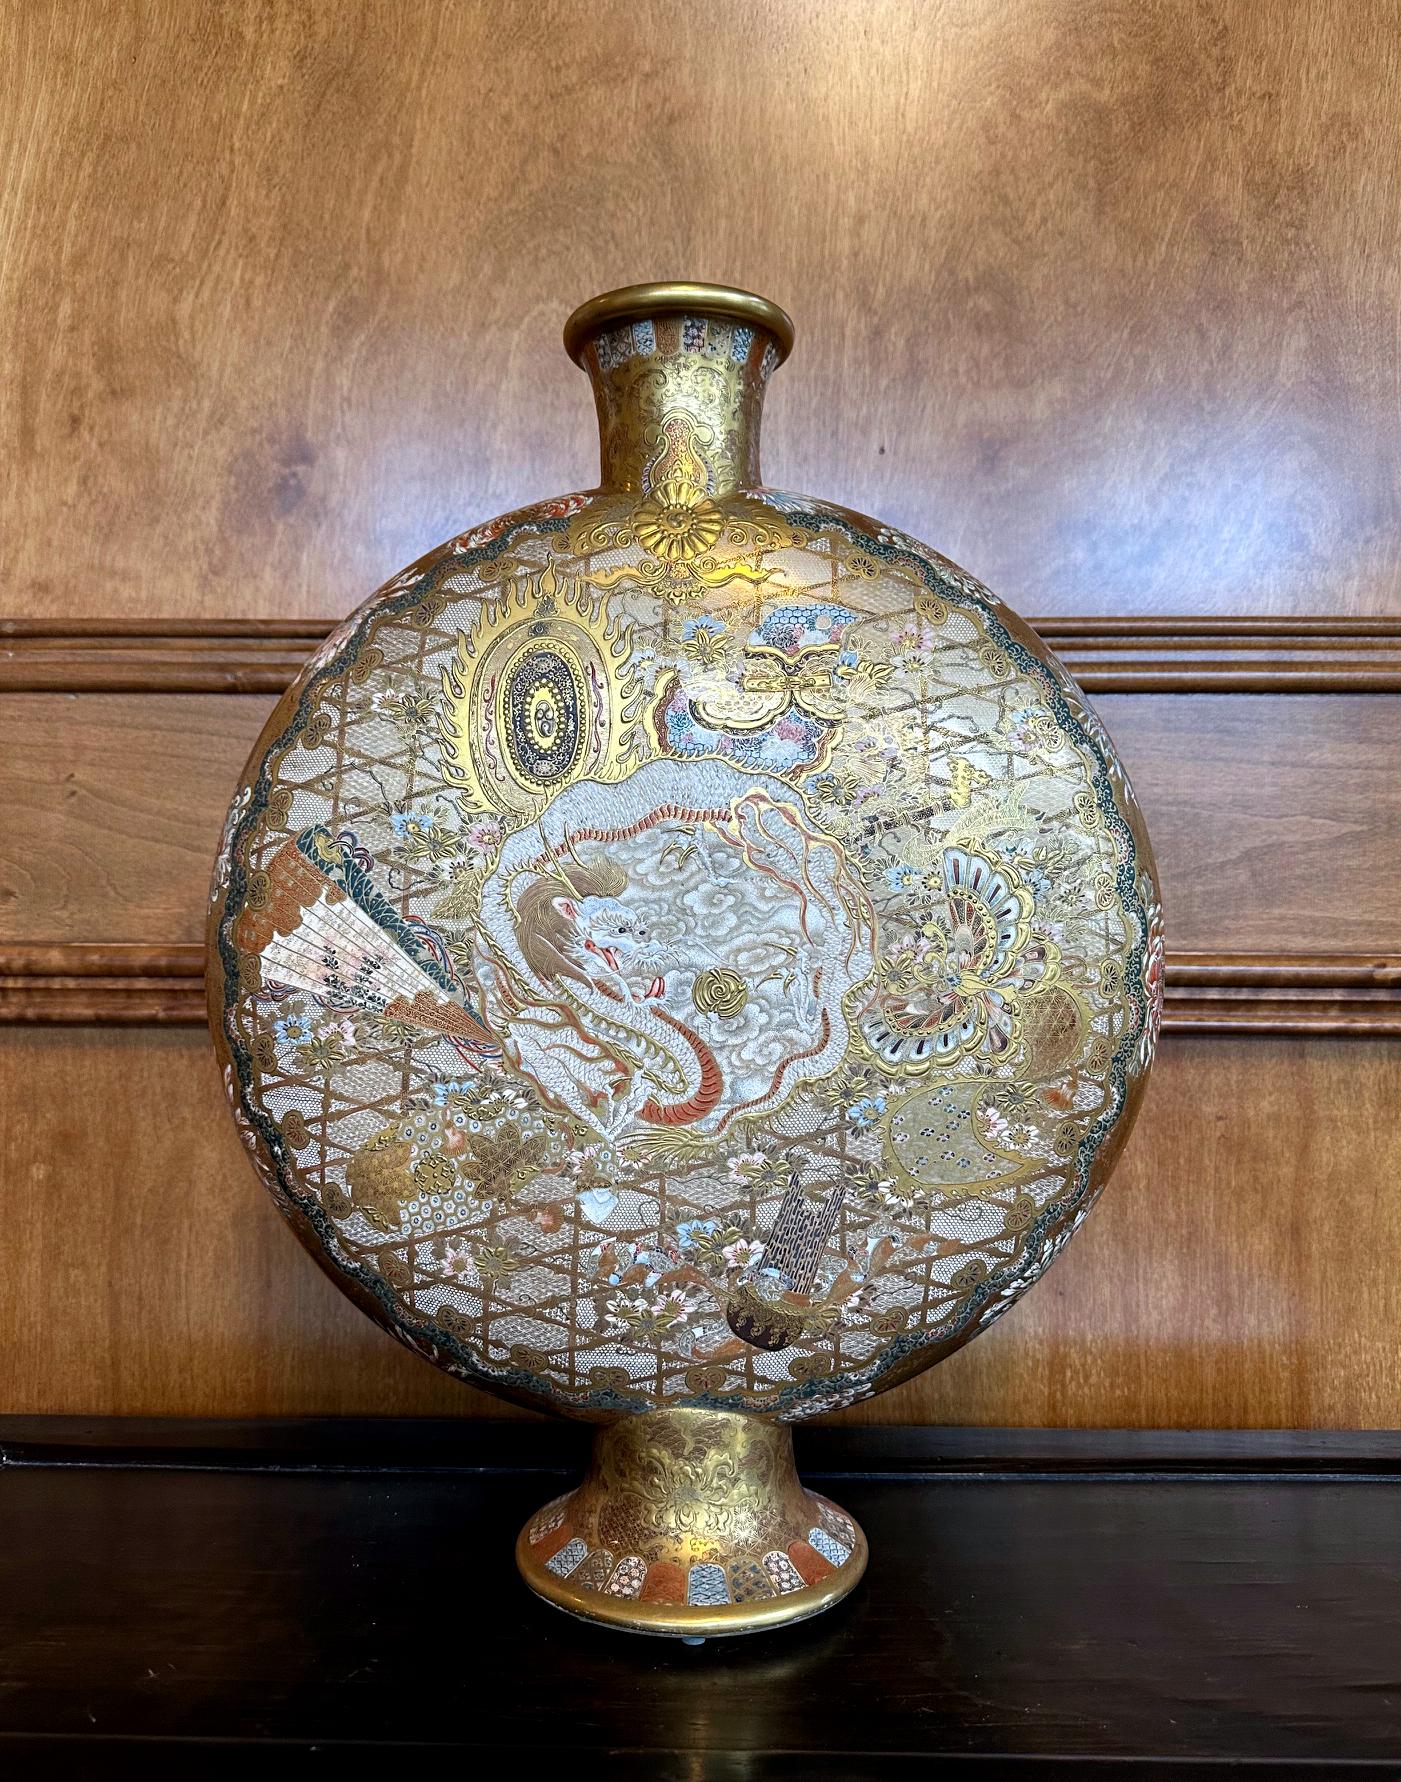 Eine große und seltene japanische Keramikvase von außergewöhnlicher Qualität aus der späten Meiji-Zeit um 1900-10 von Kinkozan (1645-1927). Einer der größten Studio-Hersteller der damaligen Export-Keramik mit Sitz in Kyoto. Im typisch dekorierten